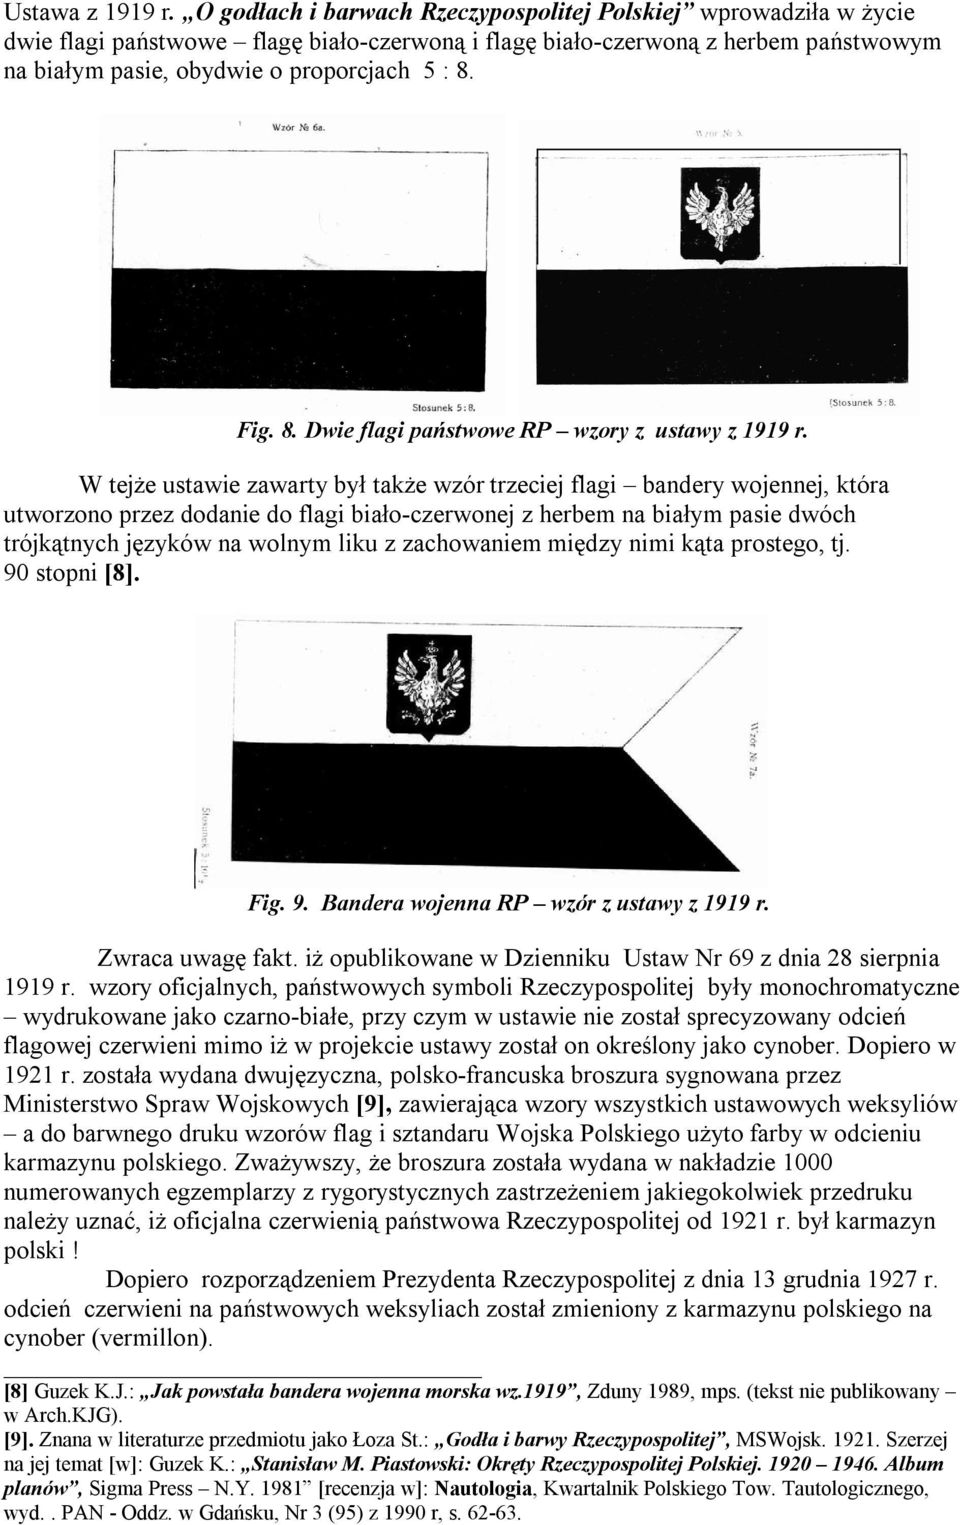 Fig. 8. Dwie flagi państwowe RP wzory z ustawy z 1919 r.